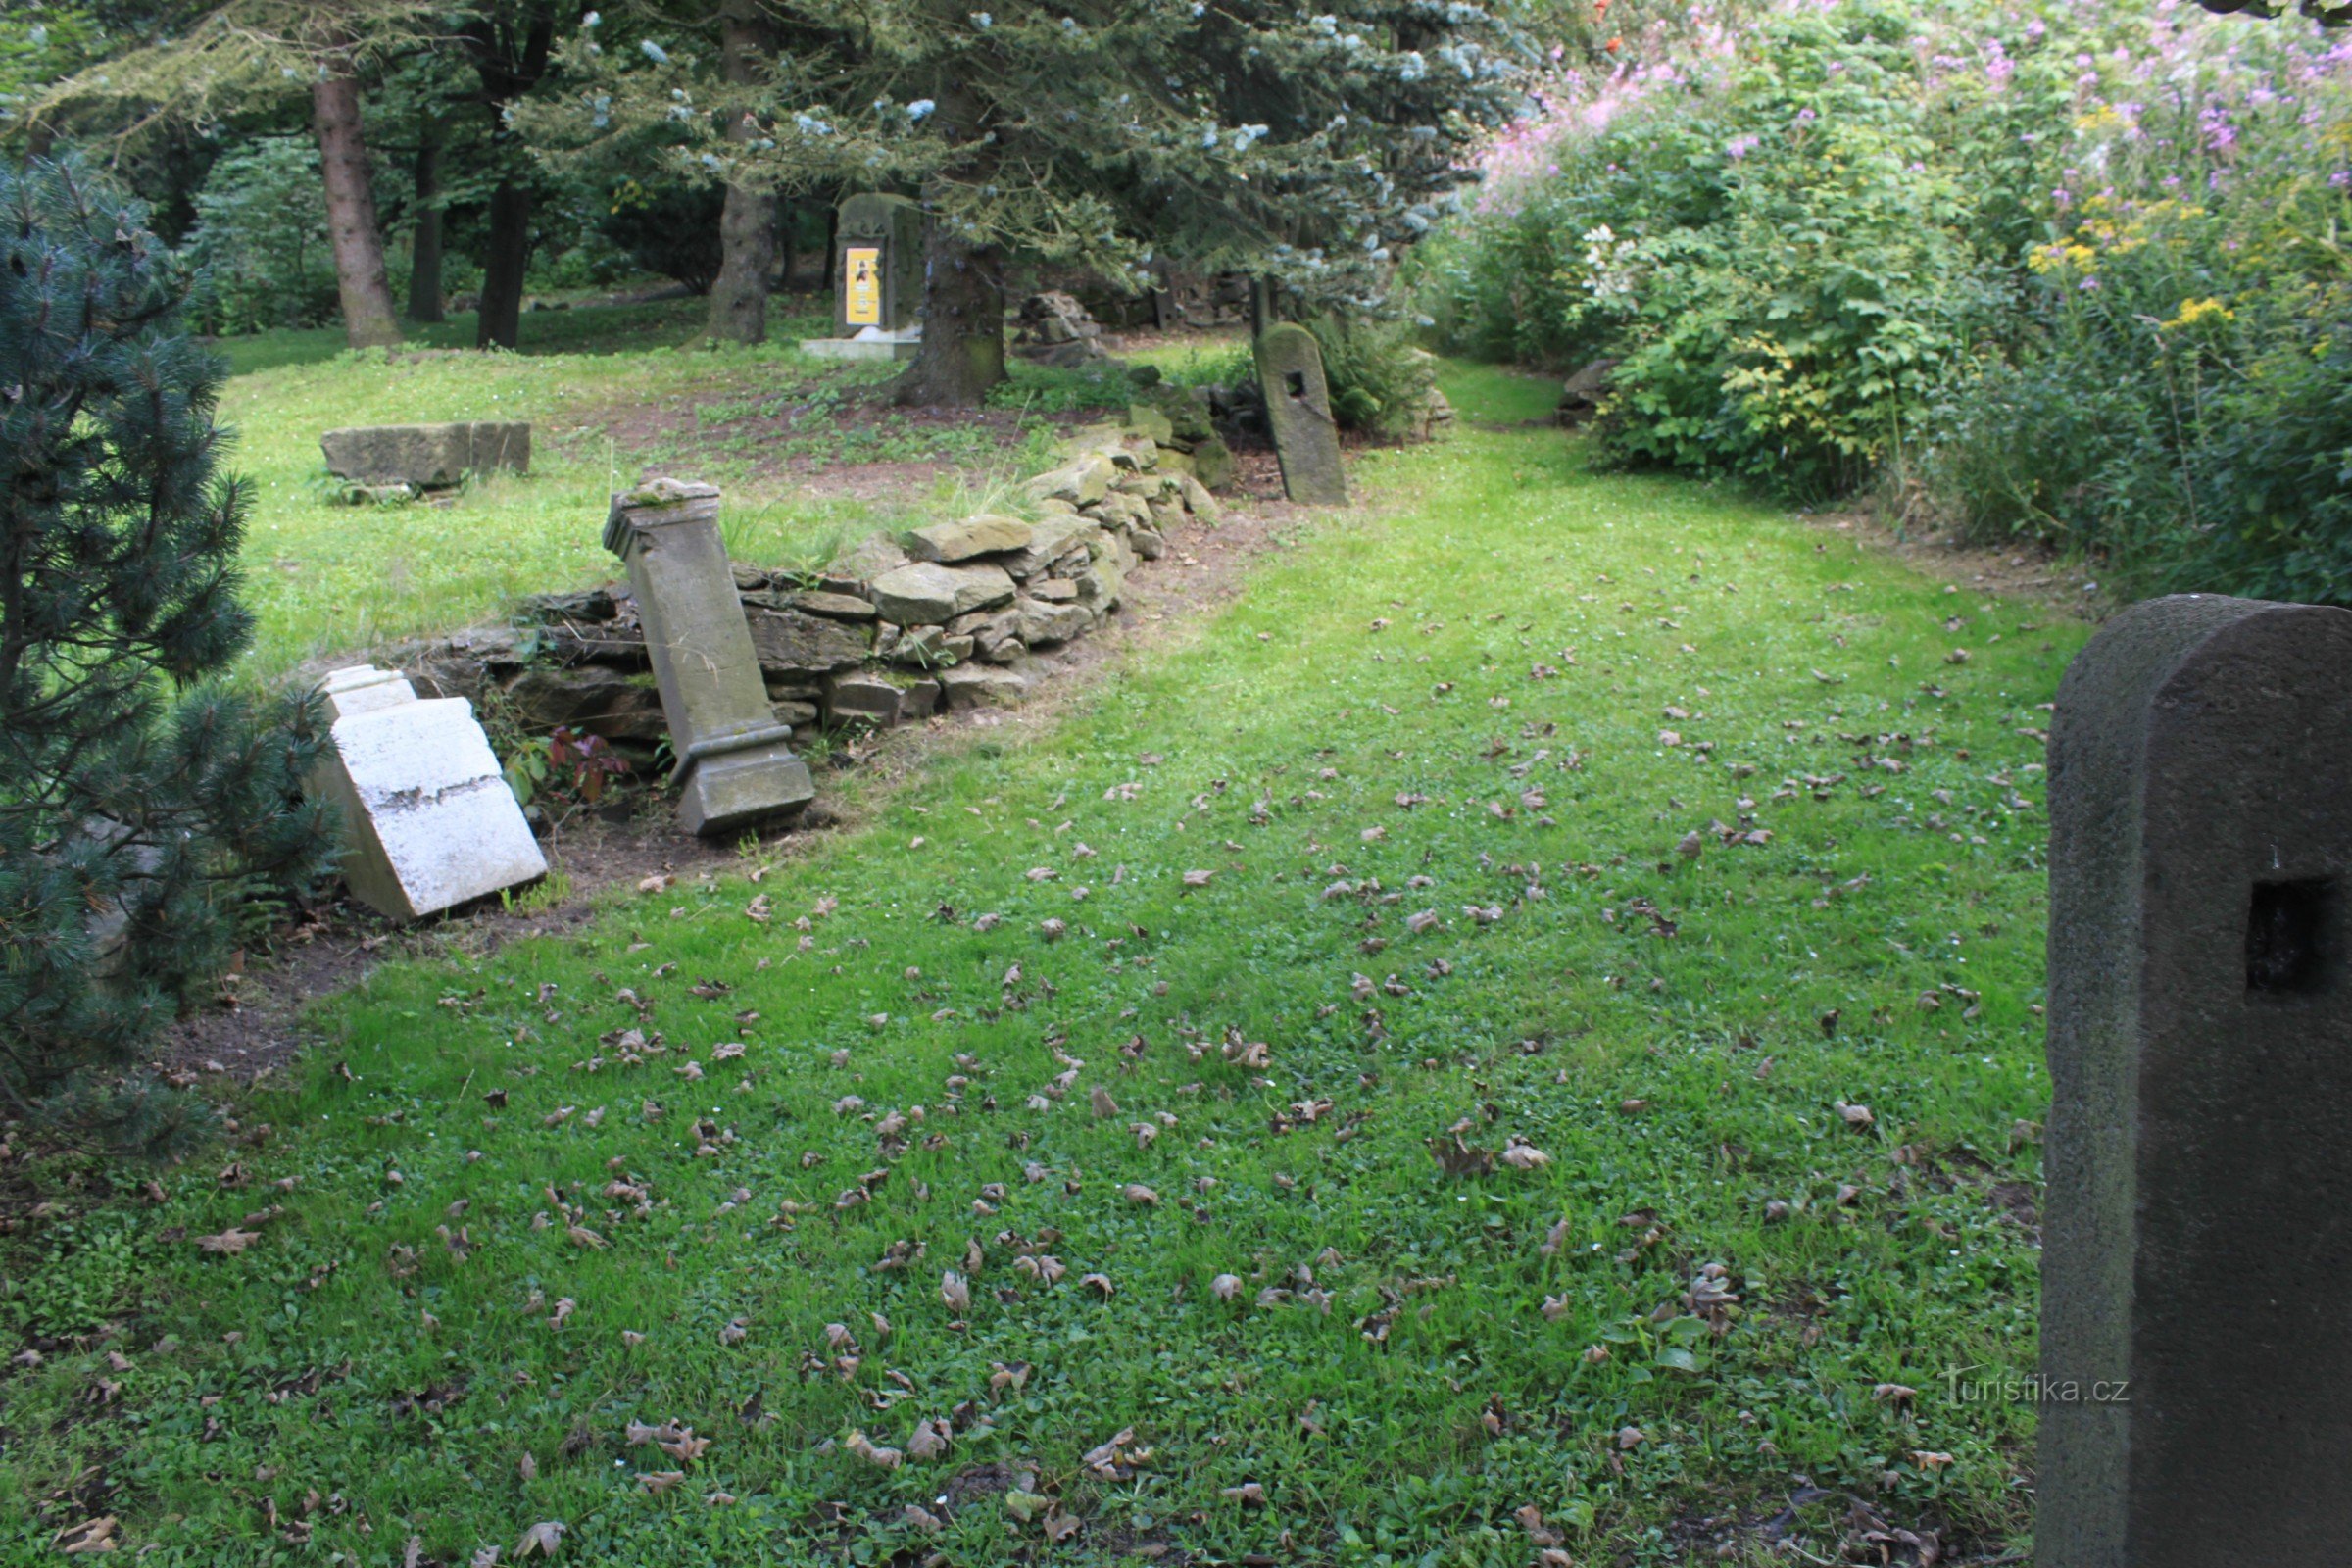 Rester av kyrkogården